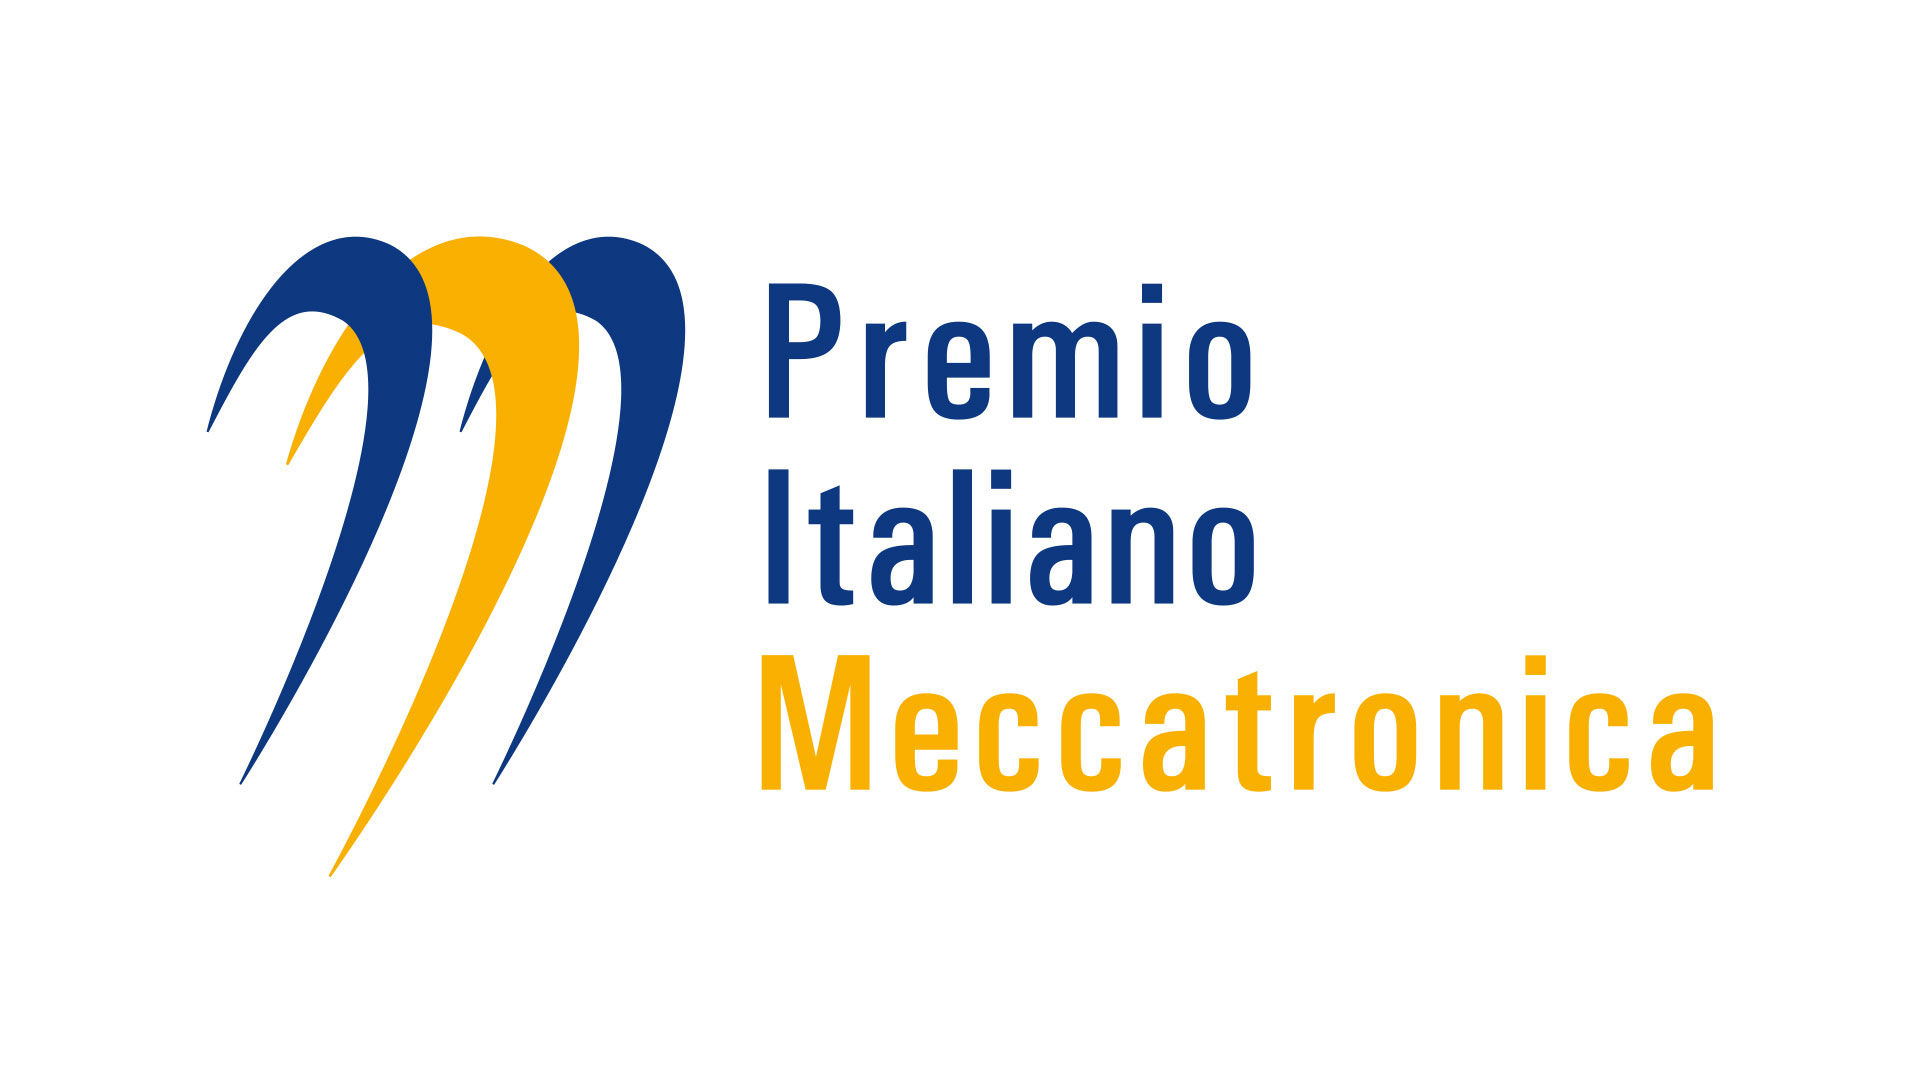 Al via la nuova edizione del Premio Italiano Meccatronica 2021